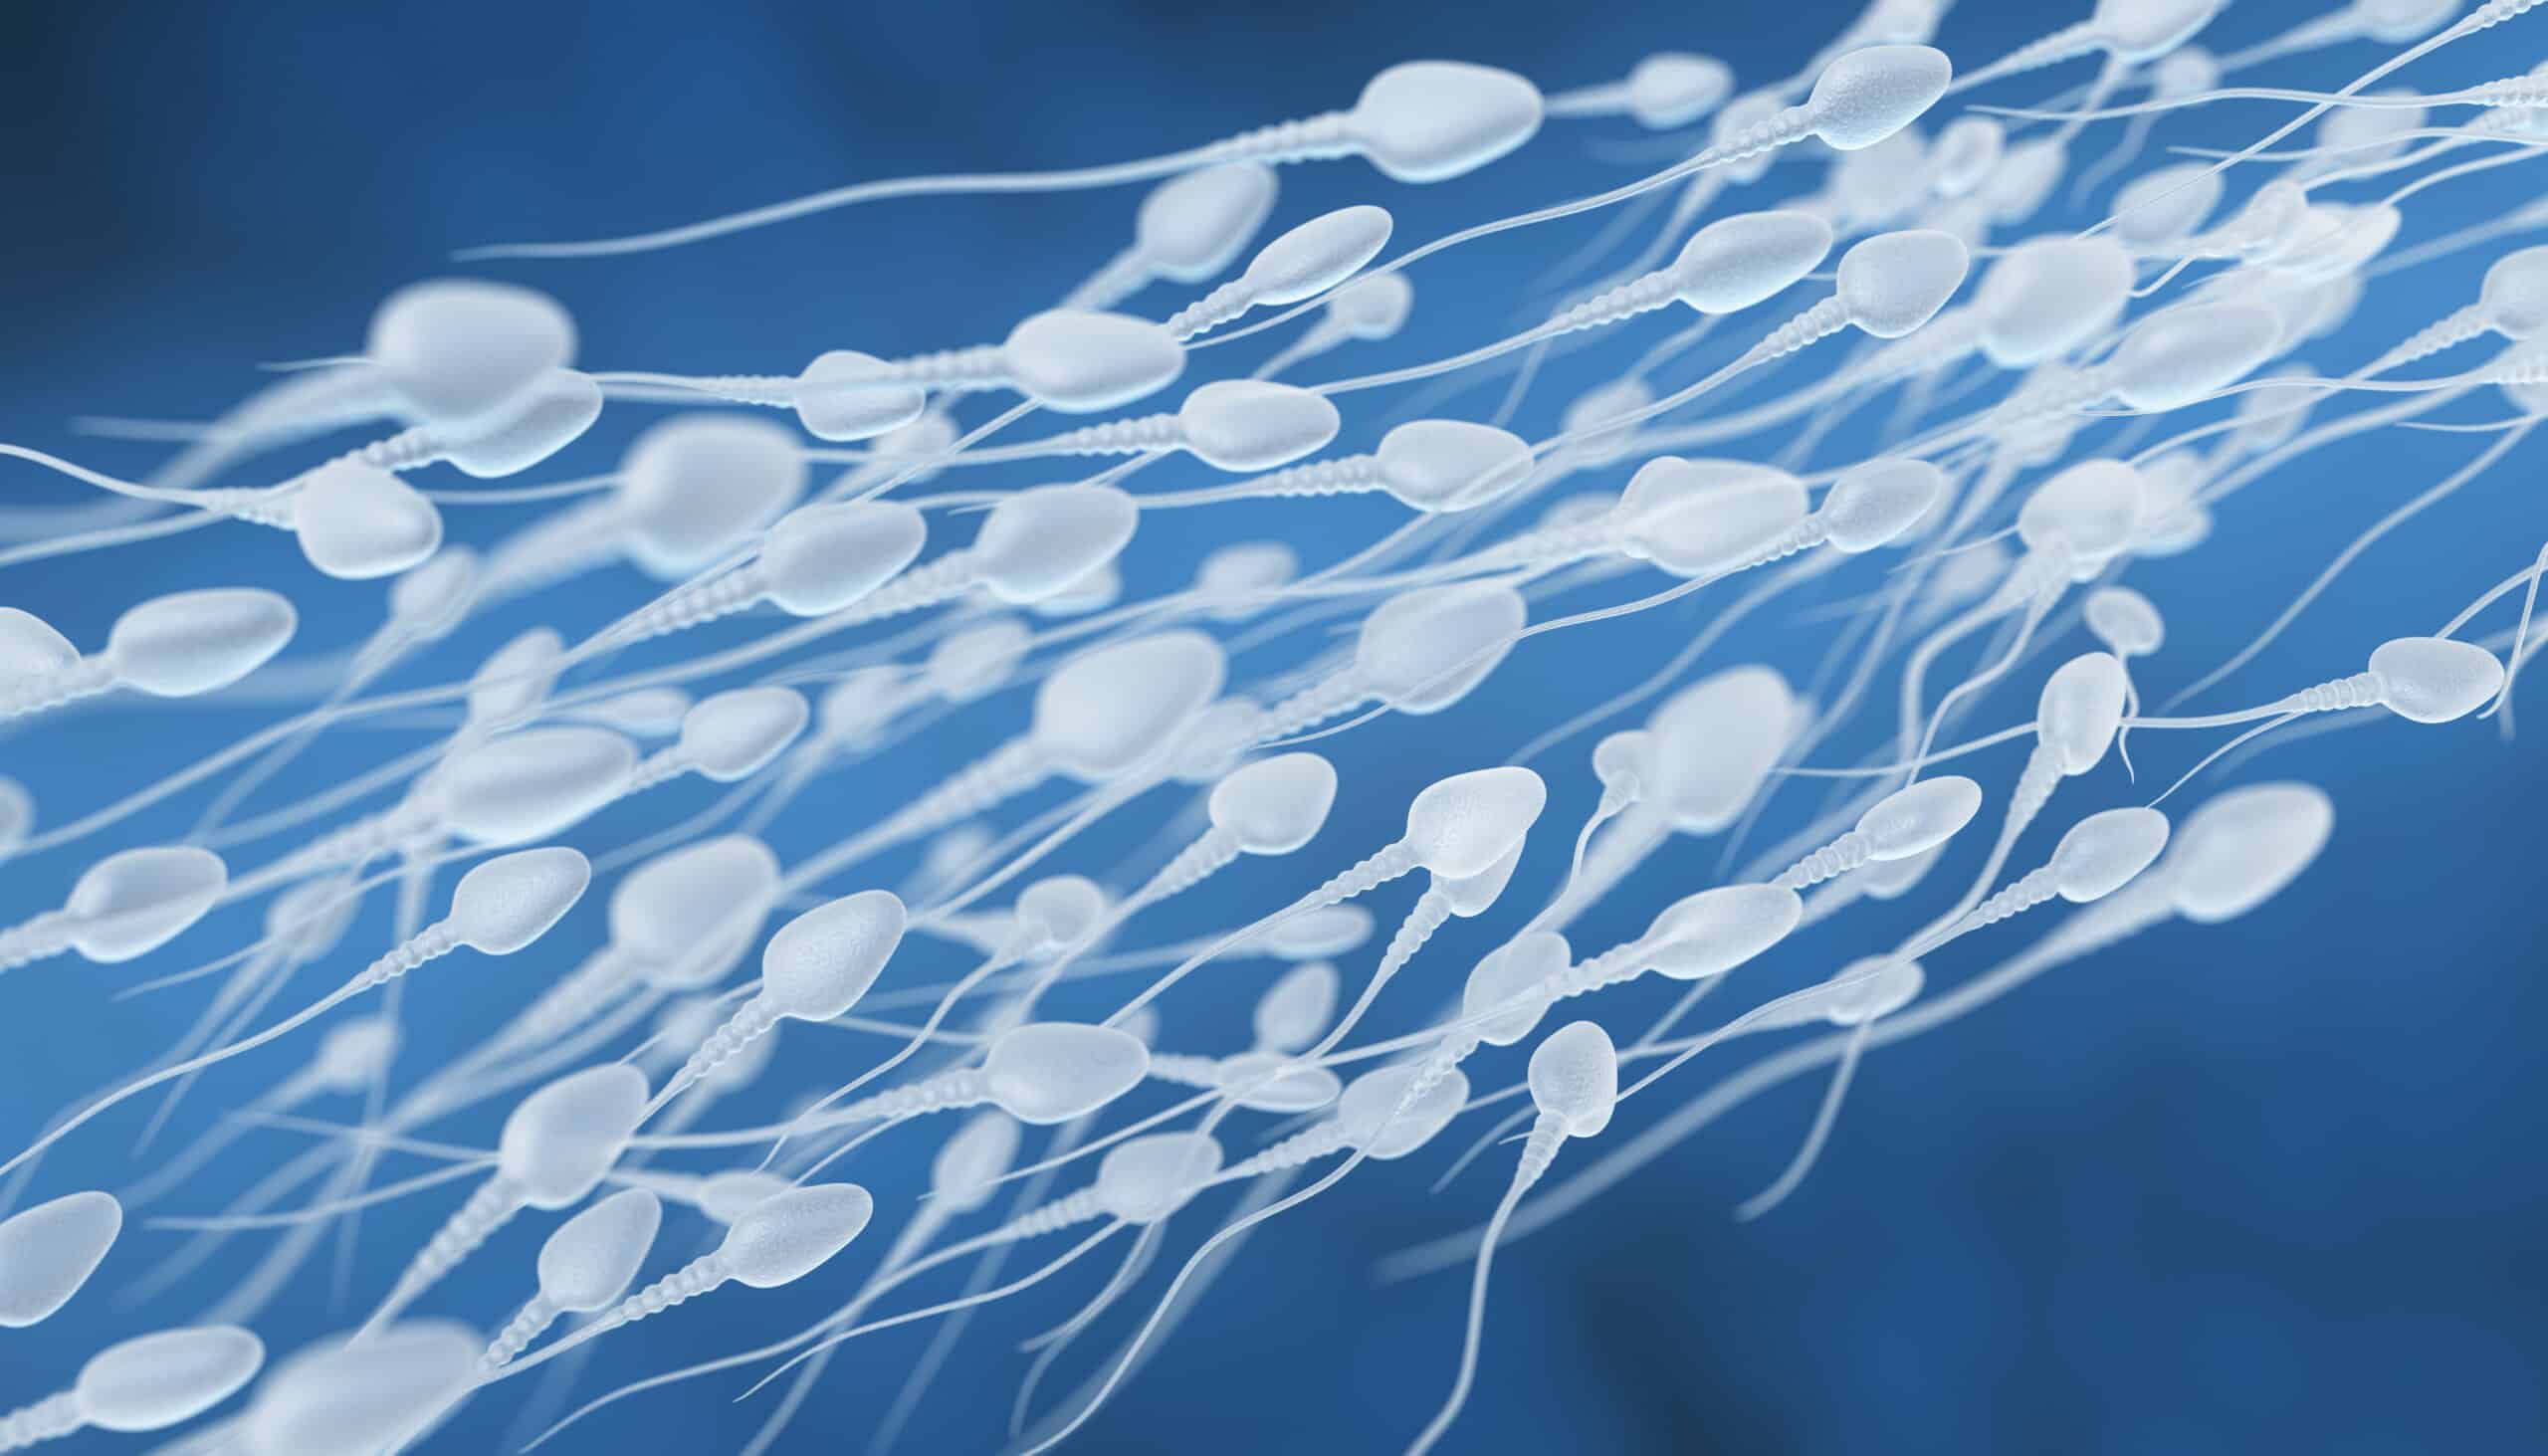 human sperm flow 2021 08 26 15 33 00 utc scaled